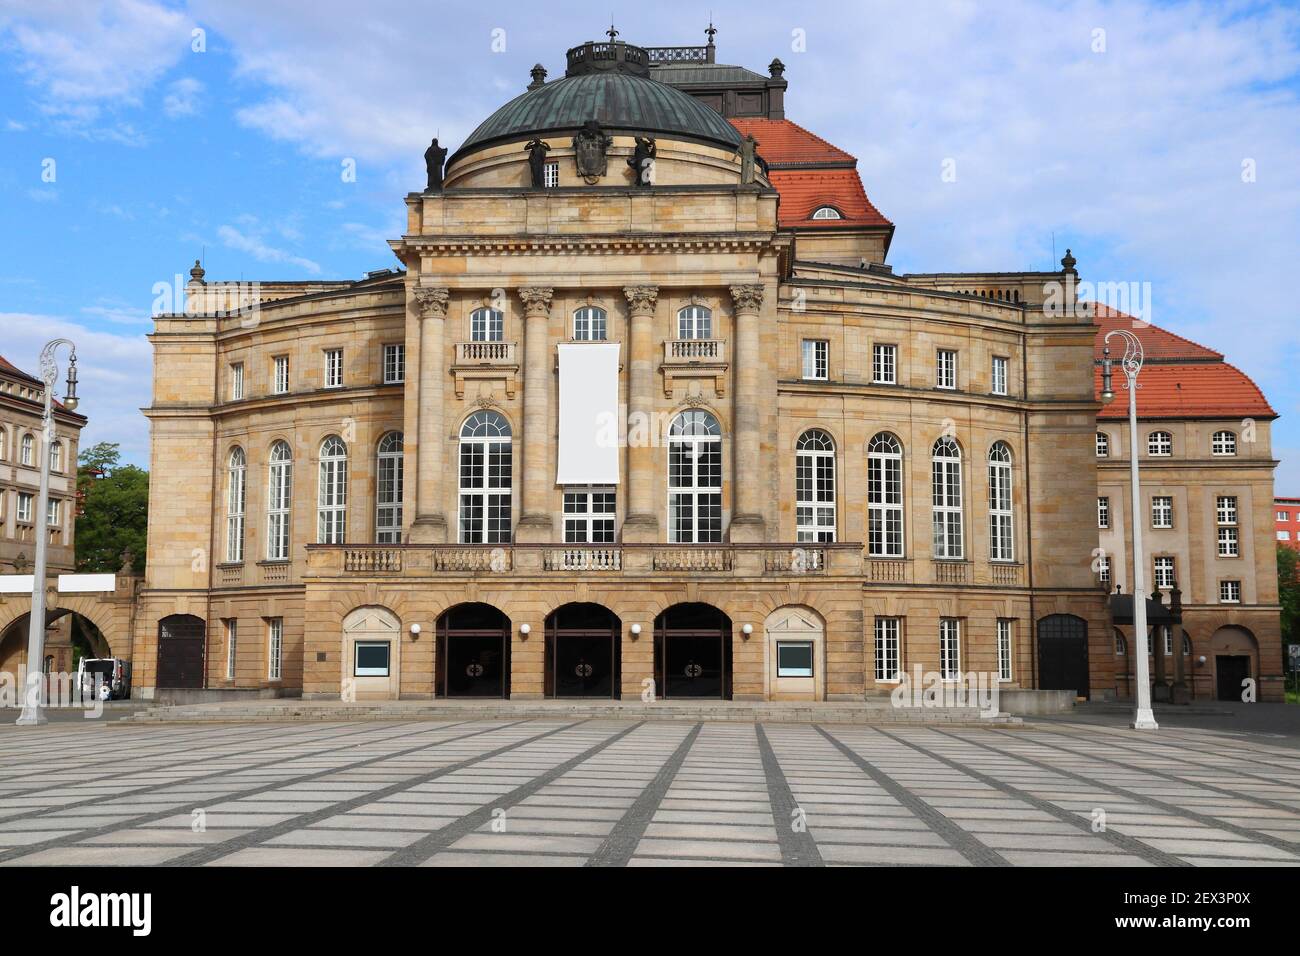 Ville de Chemnitz, Allemagne. Opéra et théâtre (Opernhaus). Banque D'Images